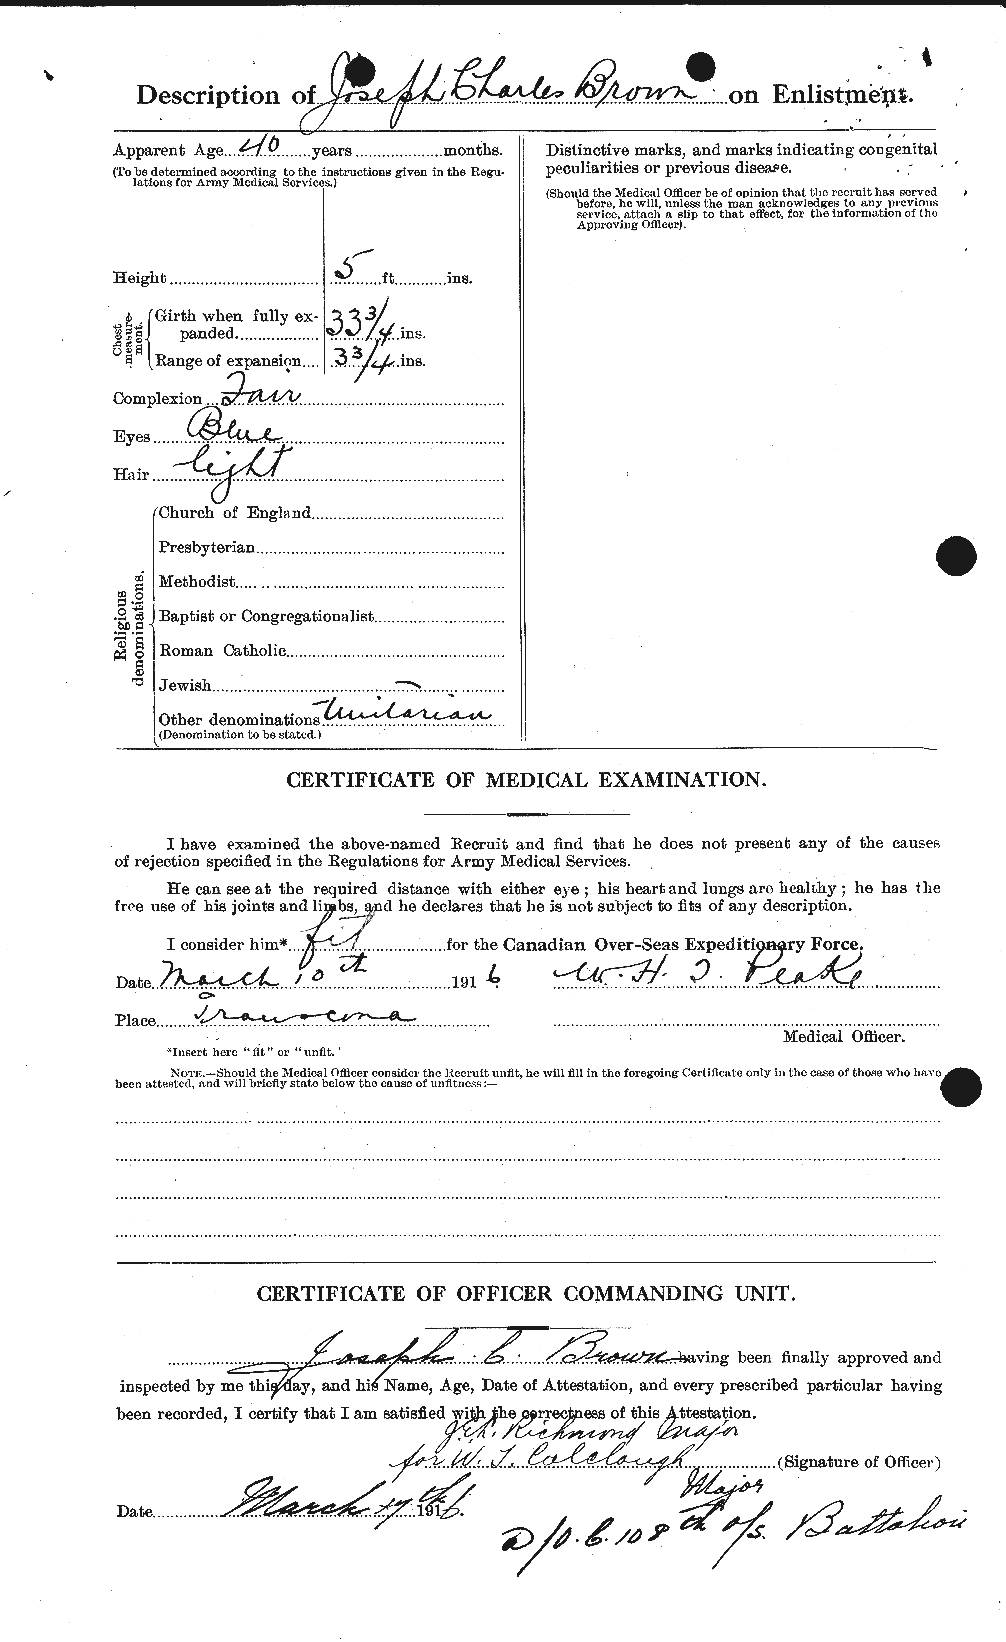 Dossiers du Personnel de la Première Guerre mondiale - CEC 265962b